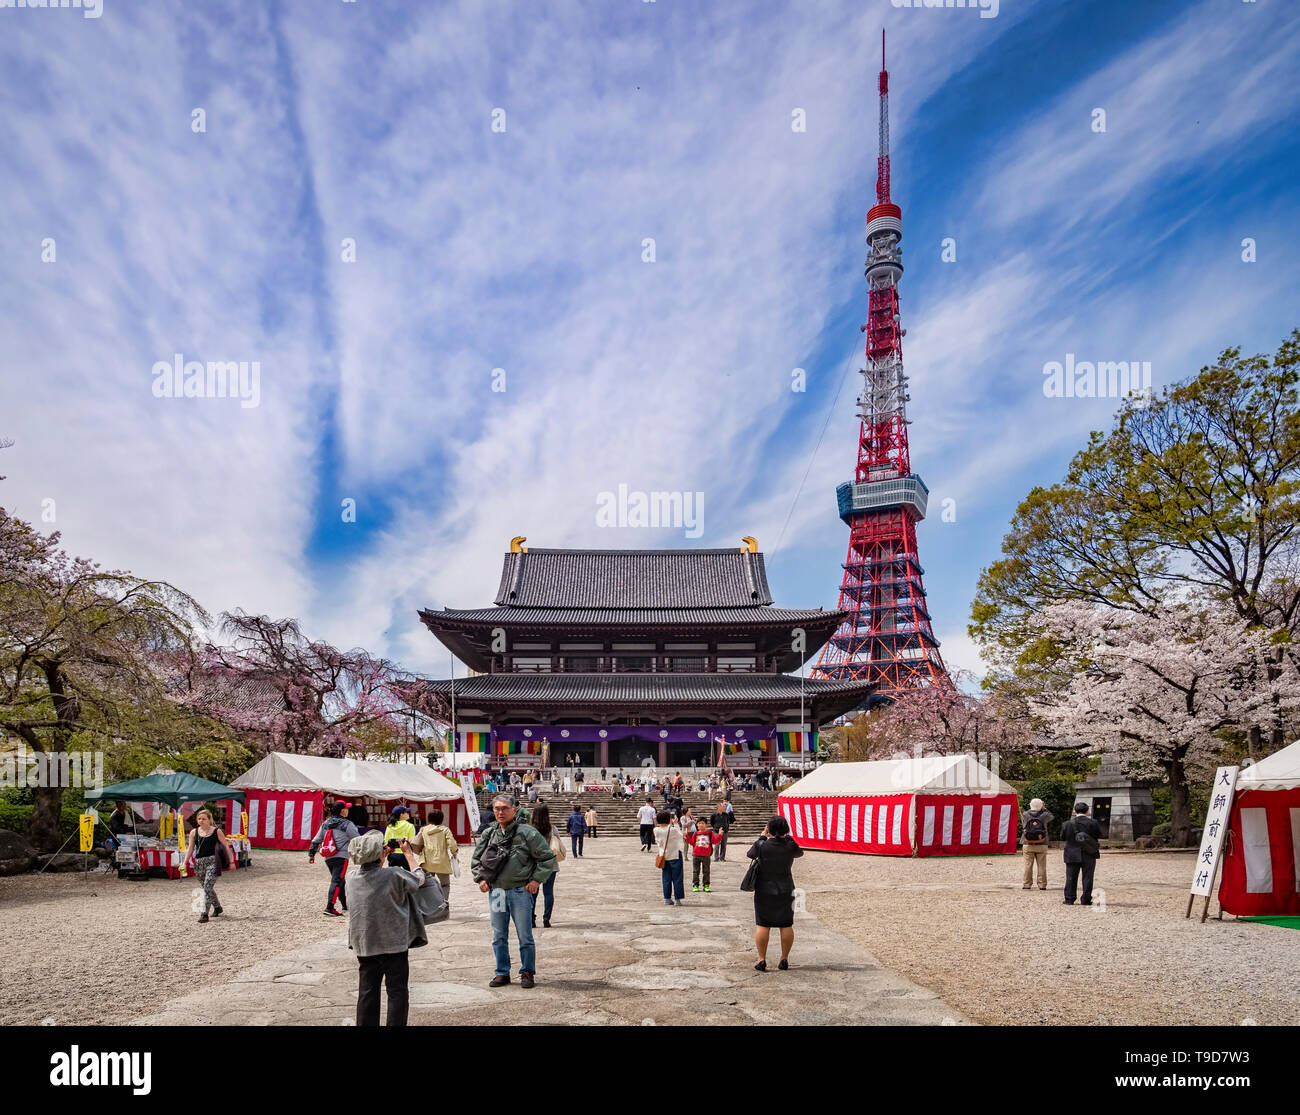 5 Aprile 2019: Tokyo, Giappone - i visitatori a Zozoji tempio buddista in fiore di ciliegio stagione, con la Torre di Tokyo. Foto Stock